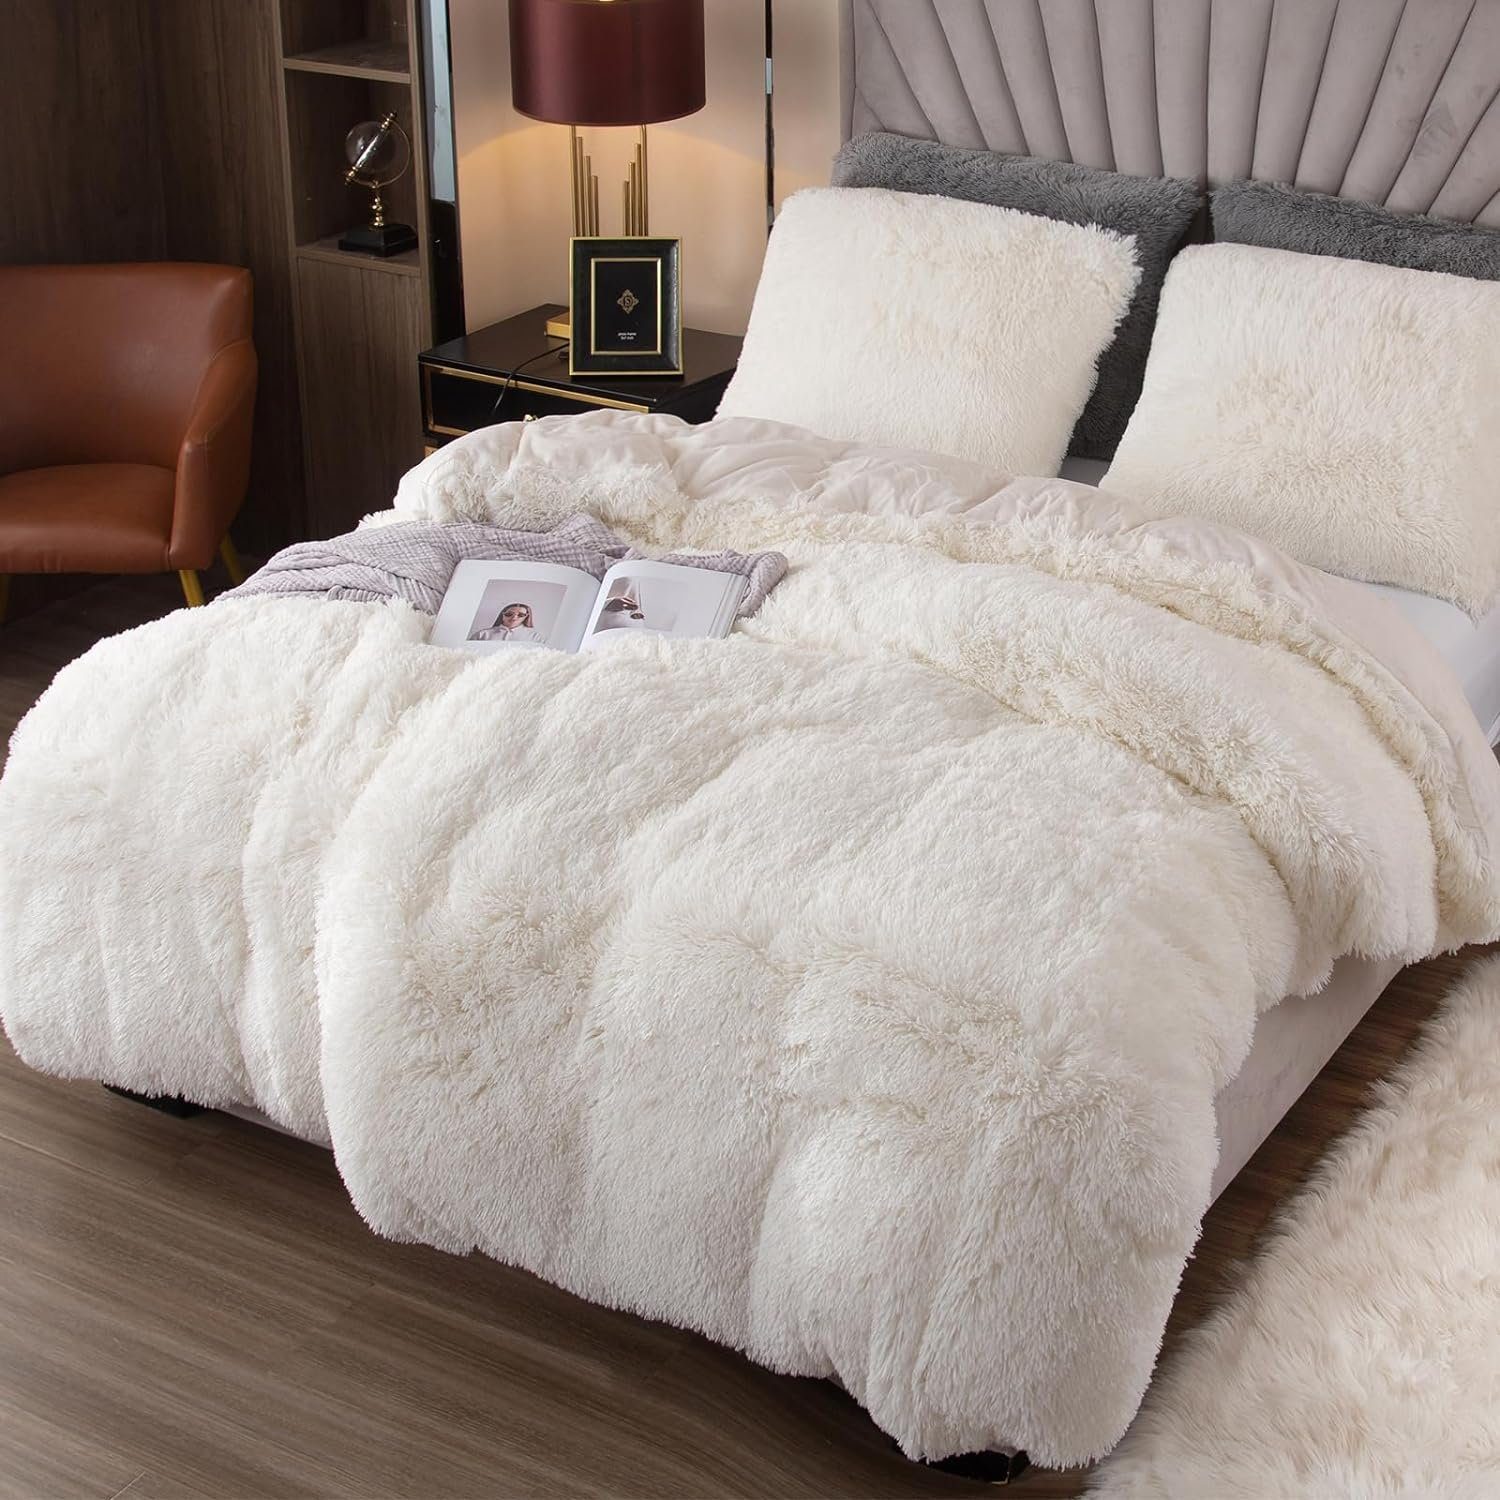 Bettwäsche Plüsch Bettwäsche,Extra flauschige Felloptik,Warme Kissenbezug Bettbezug, Flanell Deckenbezug mit Weiß 80x80 und Reißverschluss Mutoy